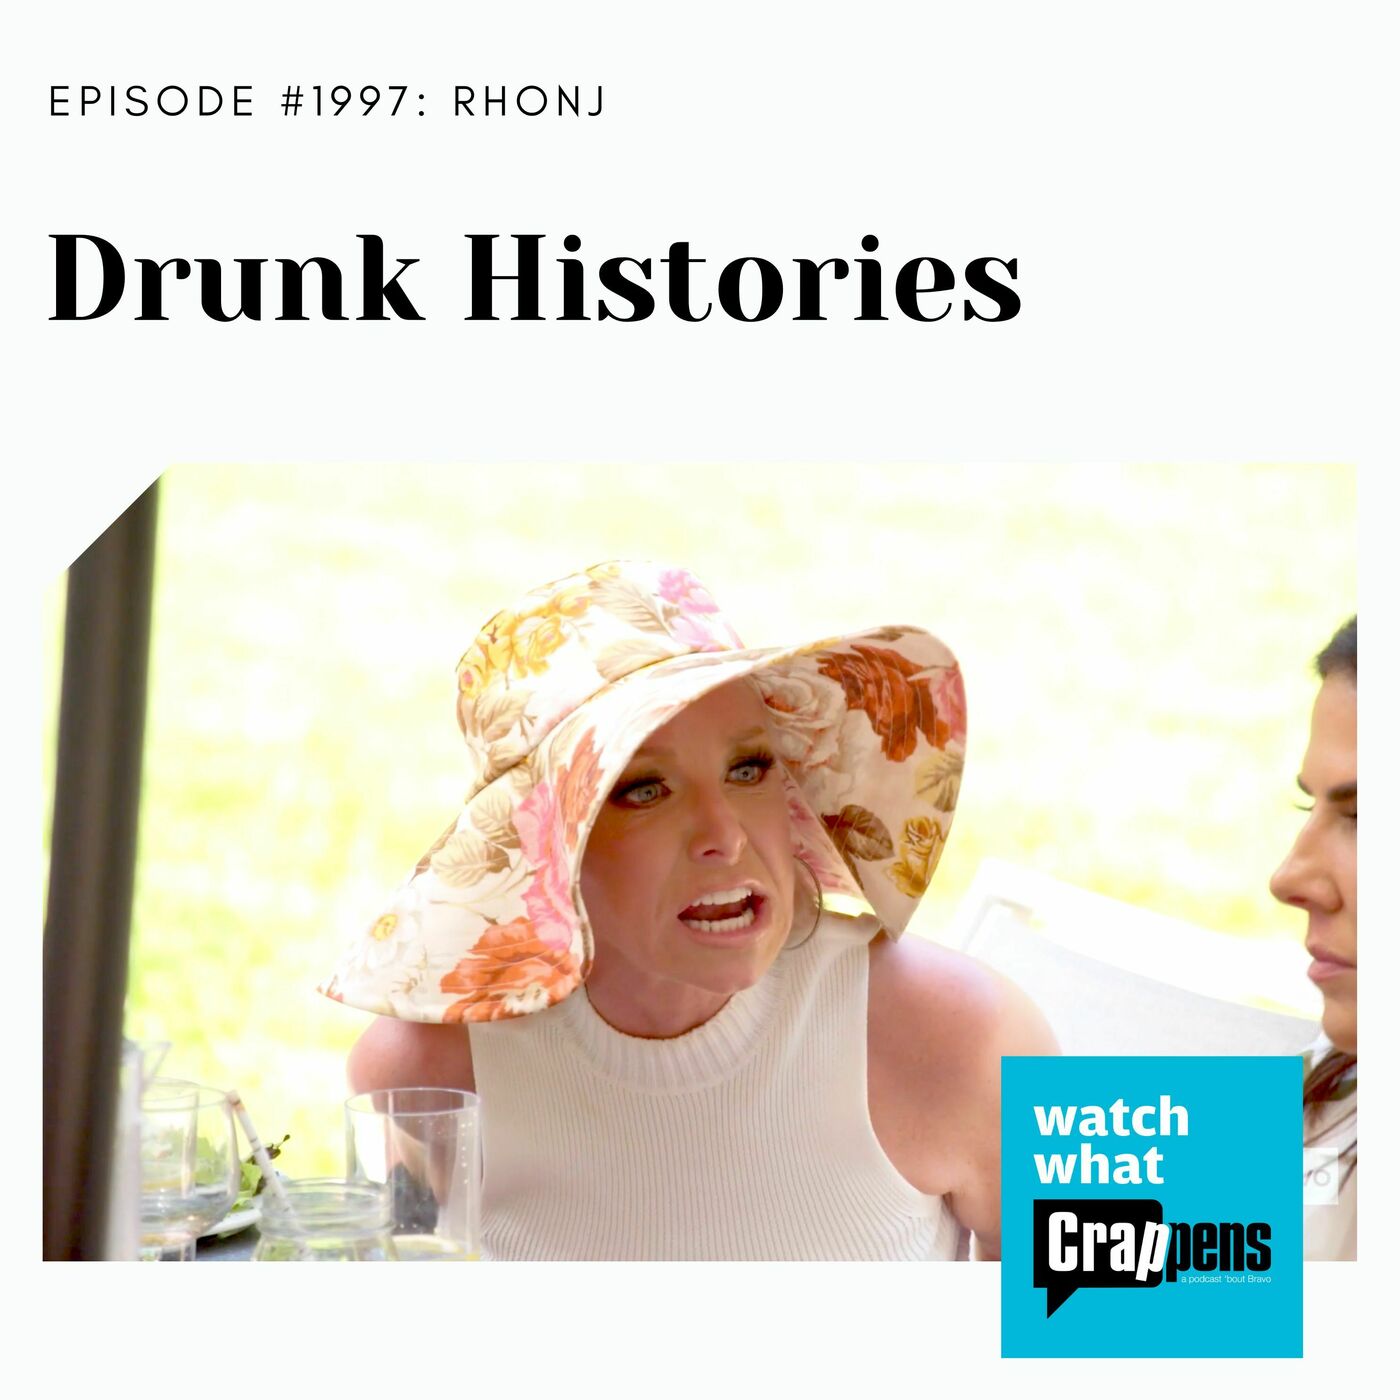 RHONJ: Drunk Histories